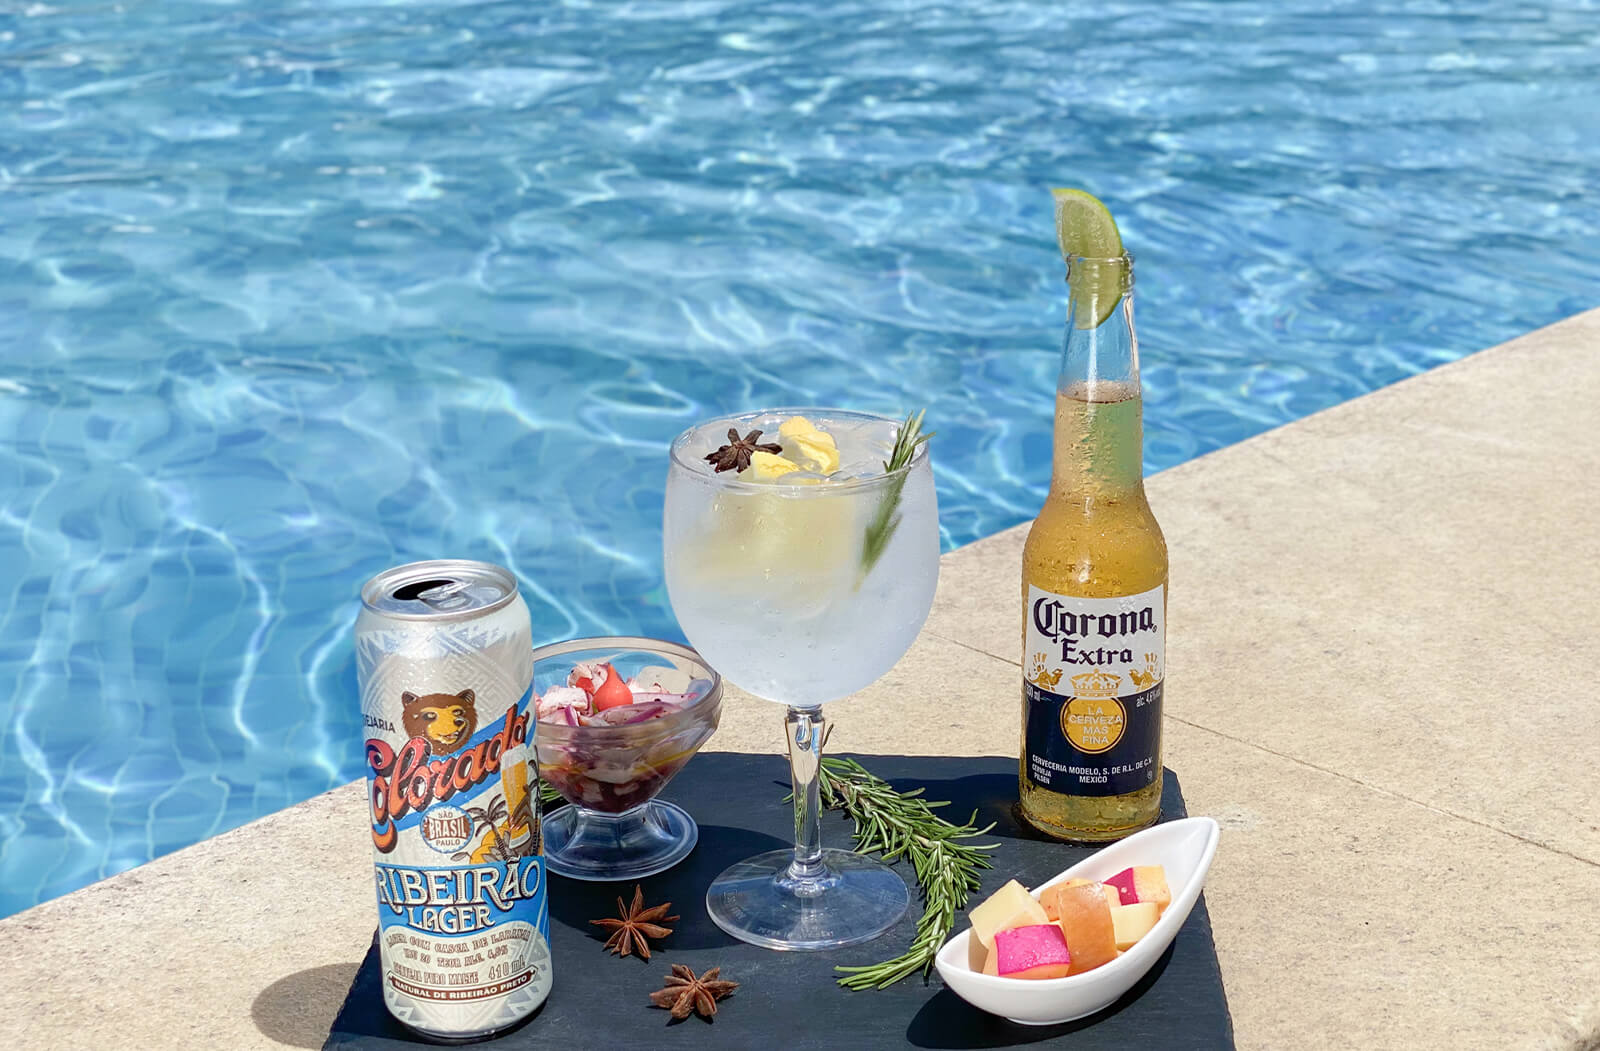 foto de uma bandeja servindo duas cervejas, uma corona e outra colorado na borda da piscina, também há um drink feito de vodka e alguns petiscos frios